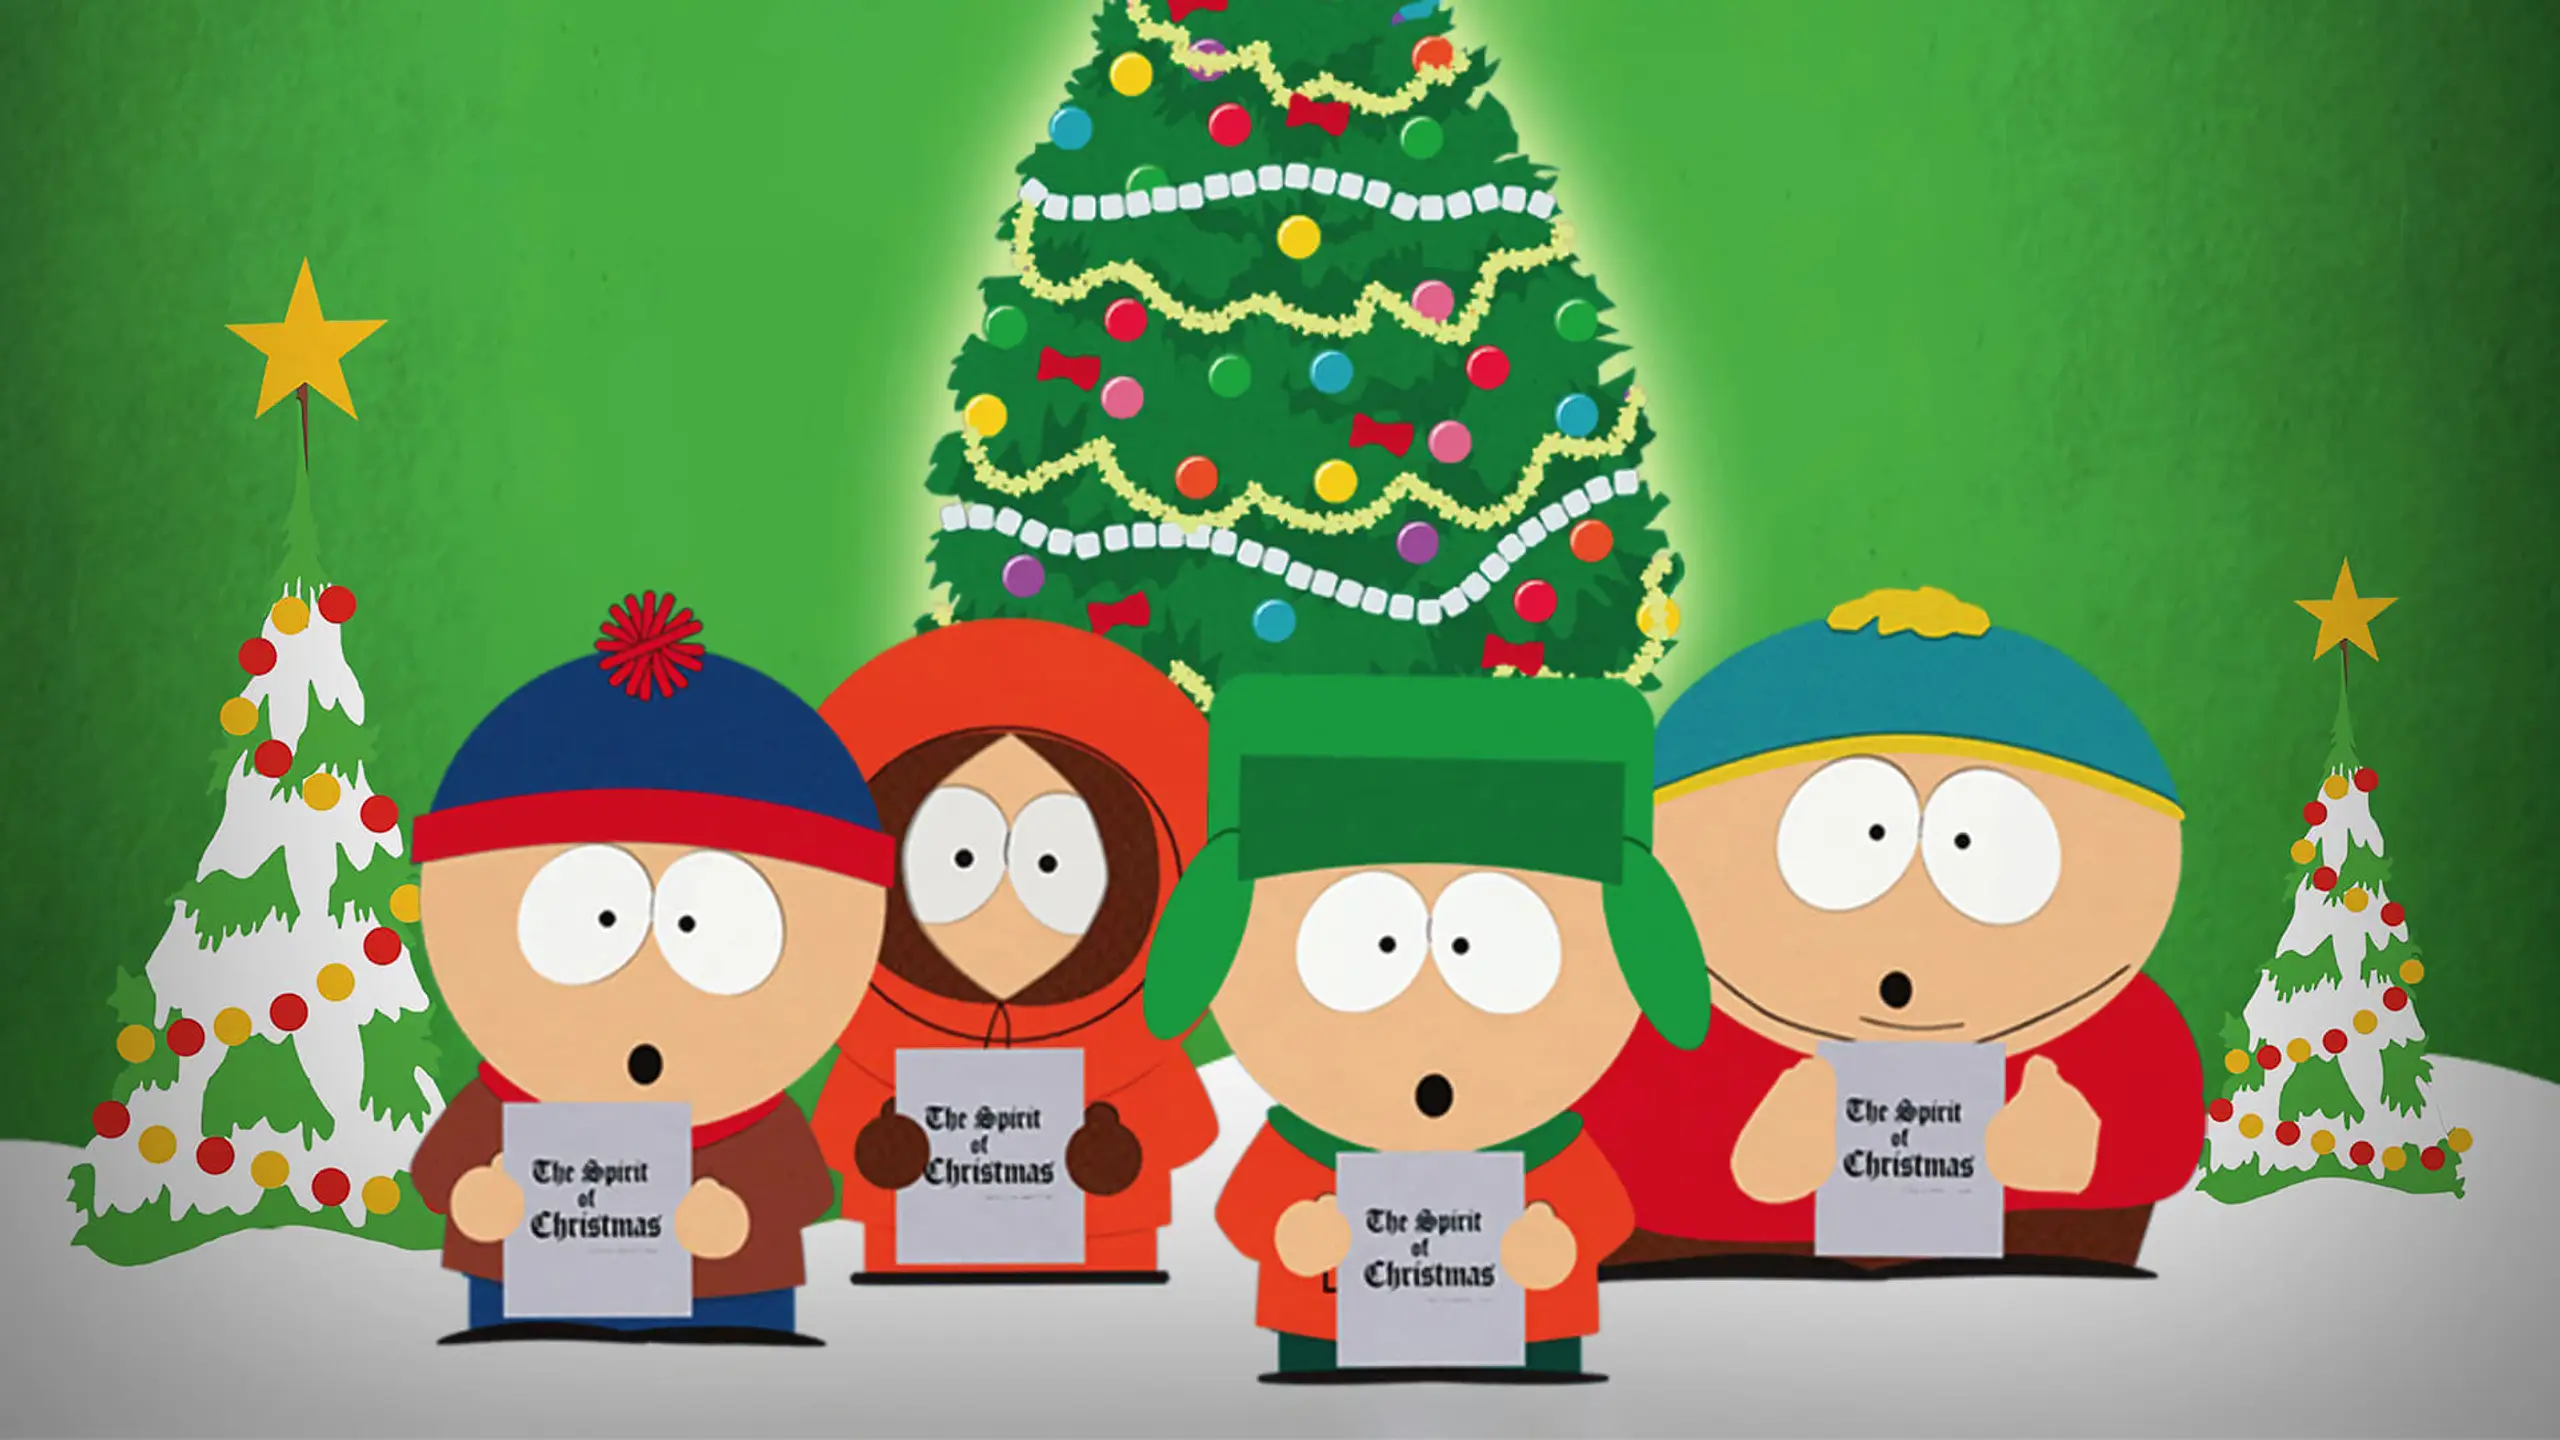 Weihnachten in South Park